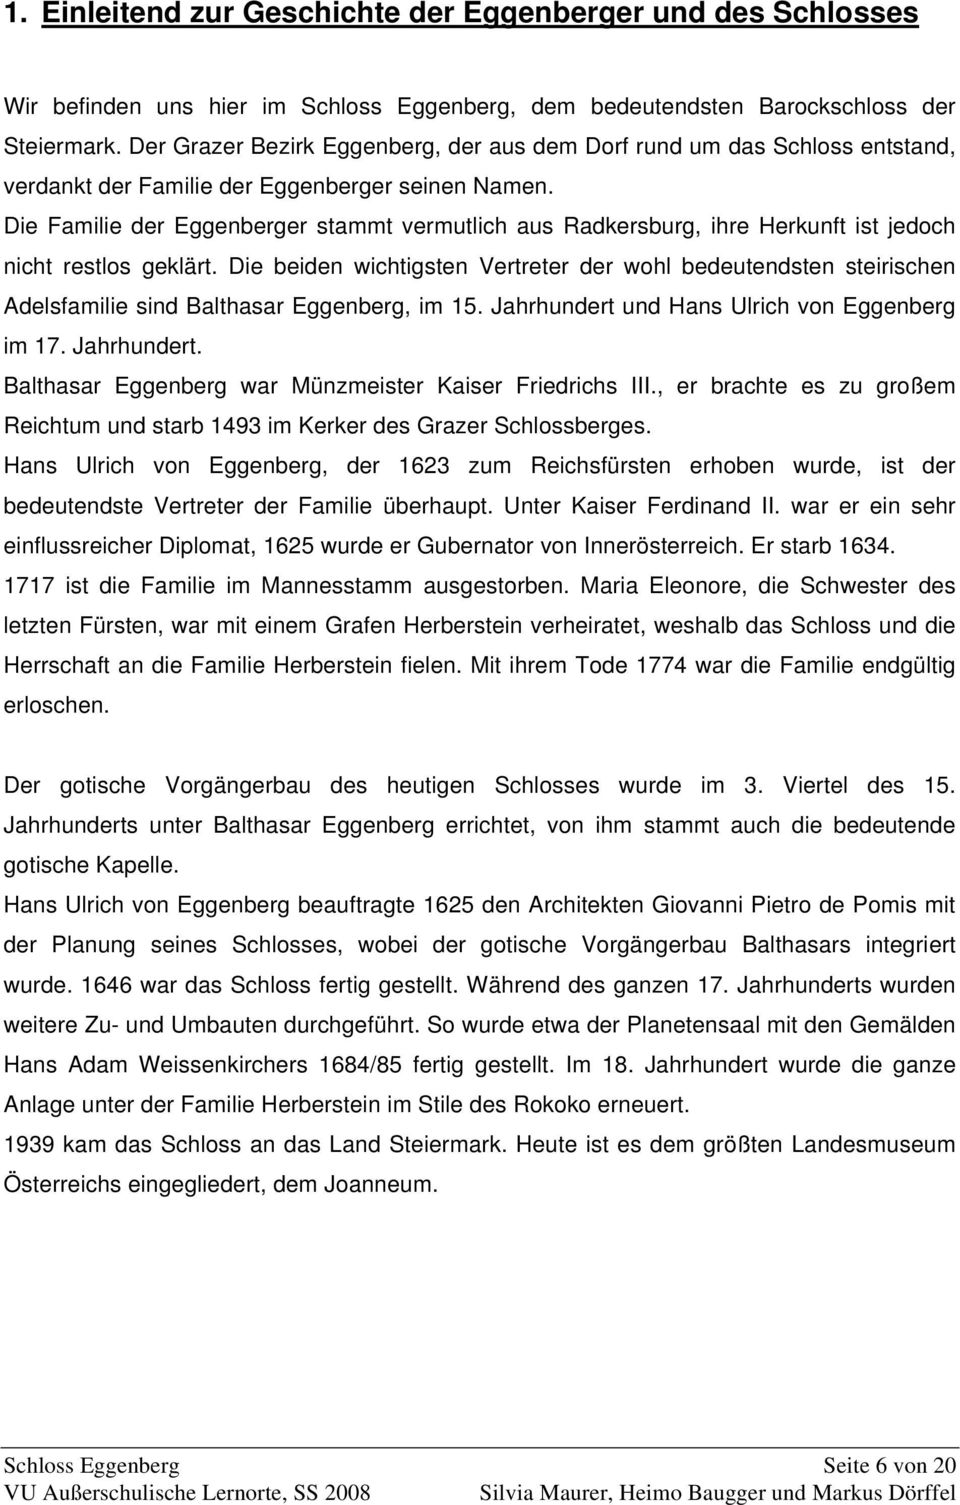 Die Familie der Eggenberger stammt vermutlich aus Radkersburg, ihre Herkunft ist jedoch nicht restlos geklärt.